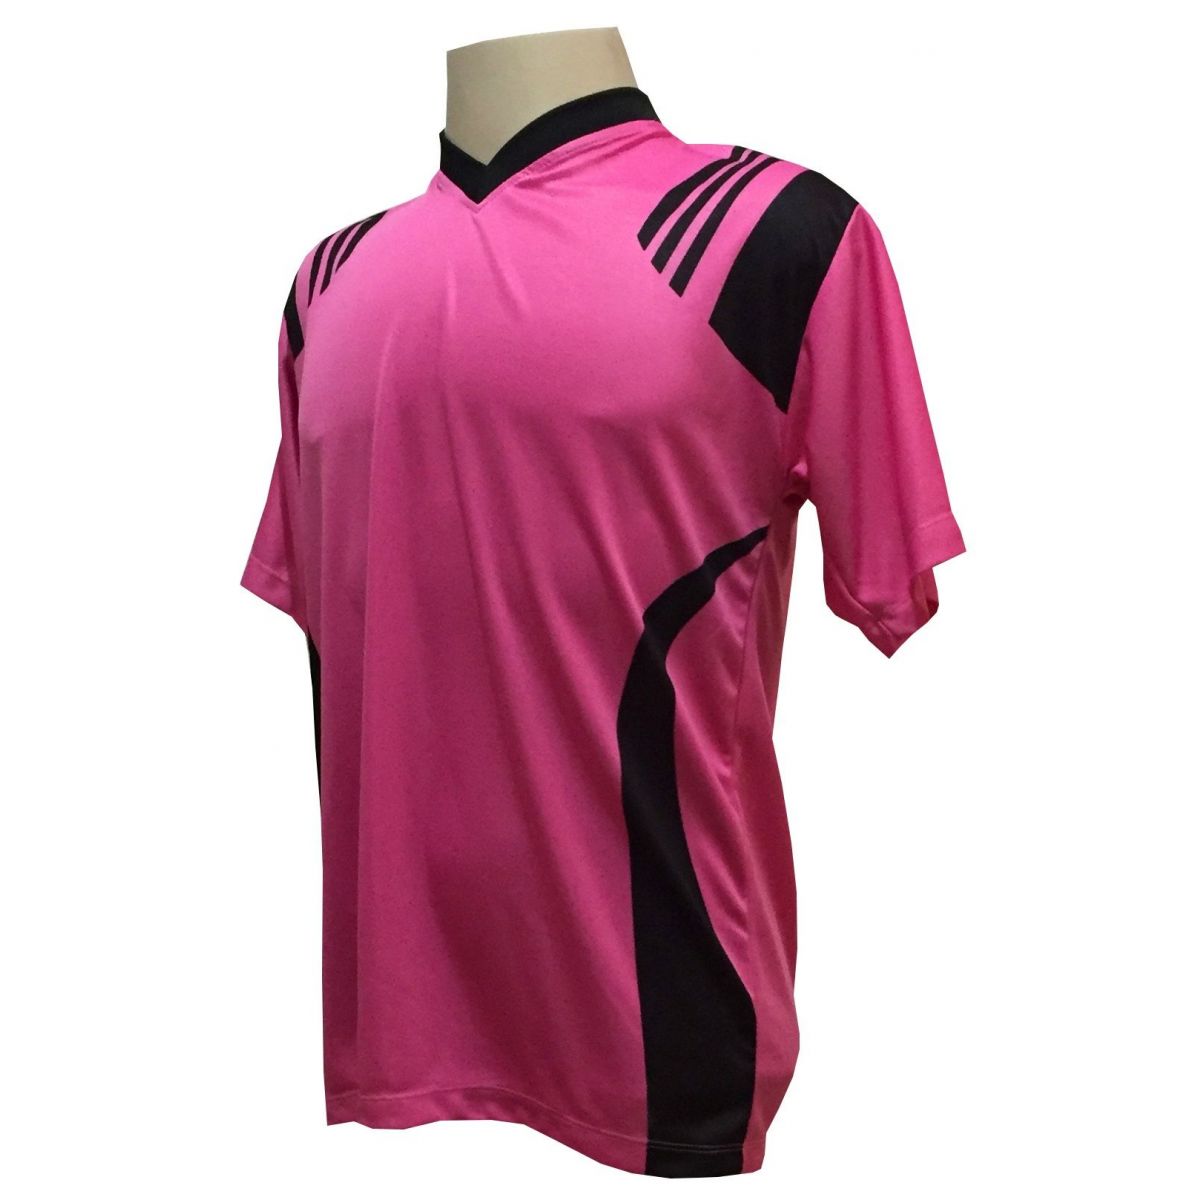 Jogo de Camisa com 18 unidades modelo Roma Pink/Preto + Brindes